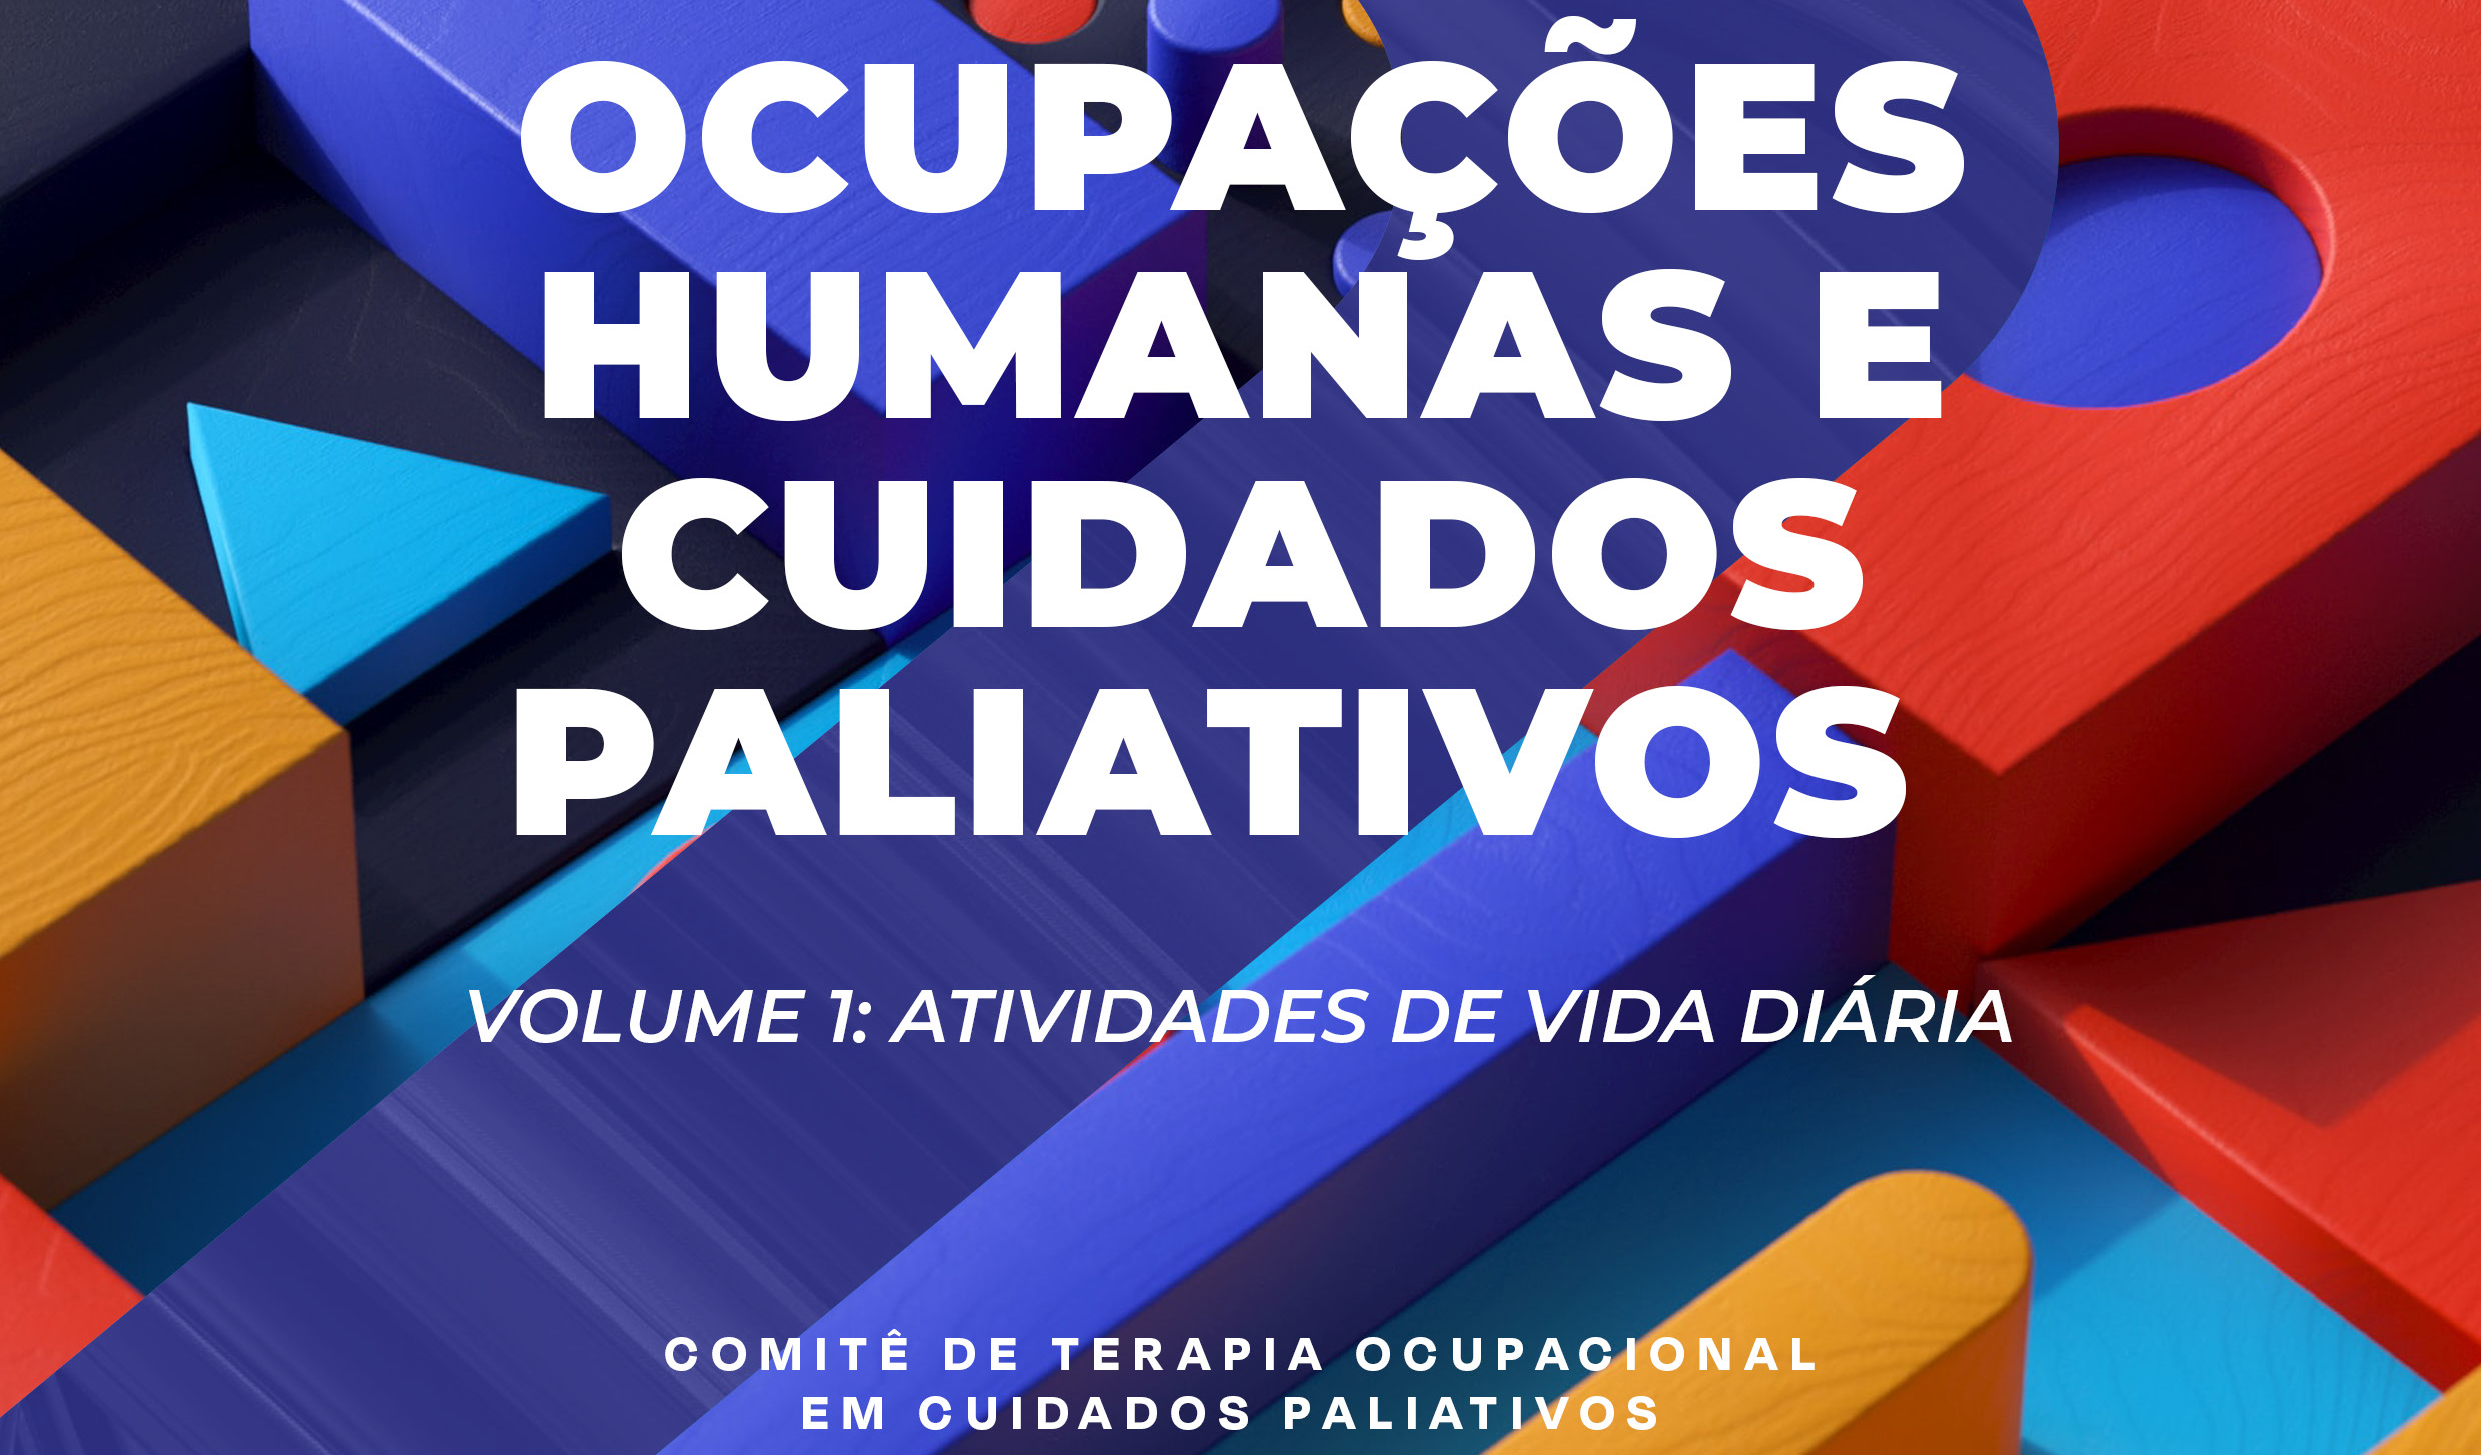 Comitê de Terapia Ocupacional da ANCP lança o 1º volume da série “Ocupações Humanas e Cuidados Paliativos”